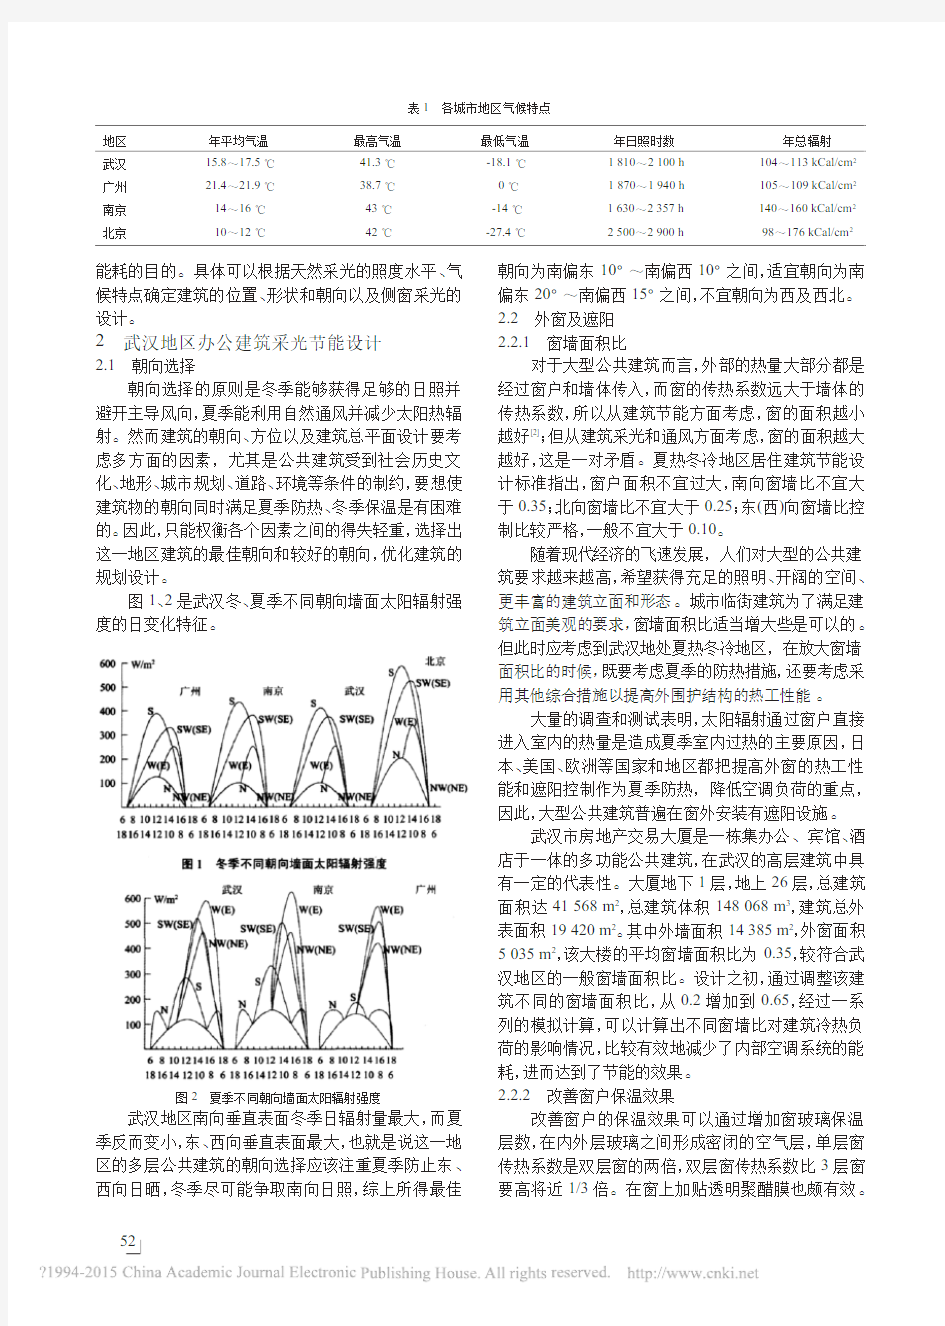 武汉地区公共建筑采光节能的研究分析_王晓